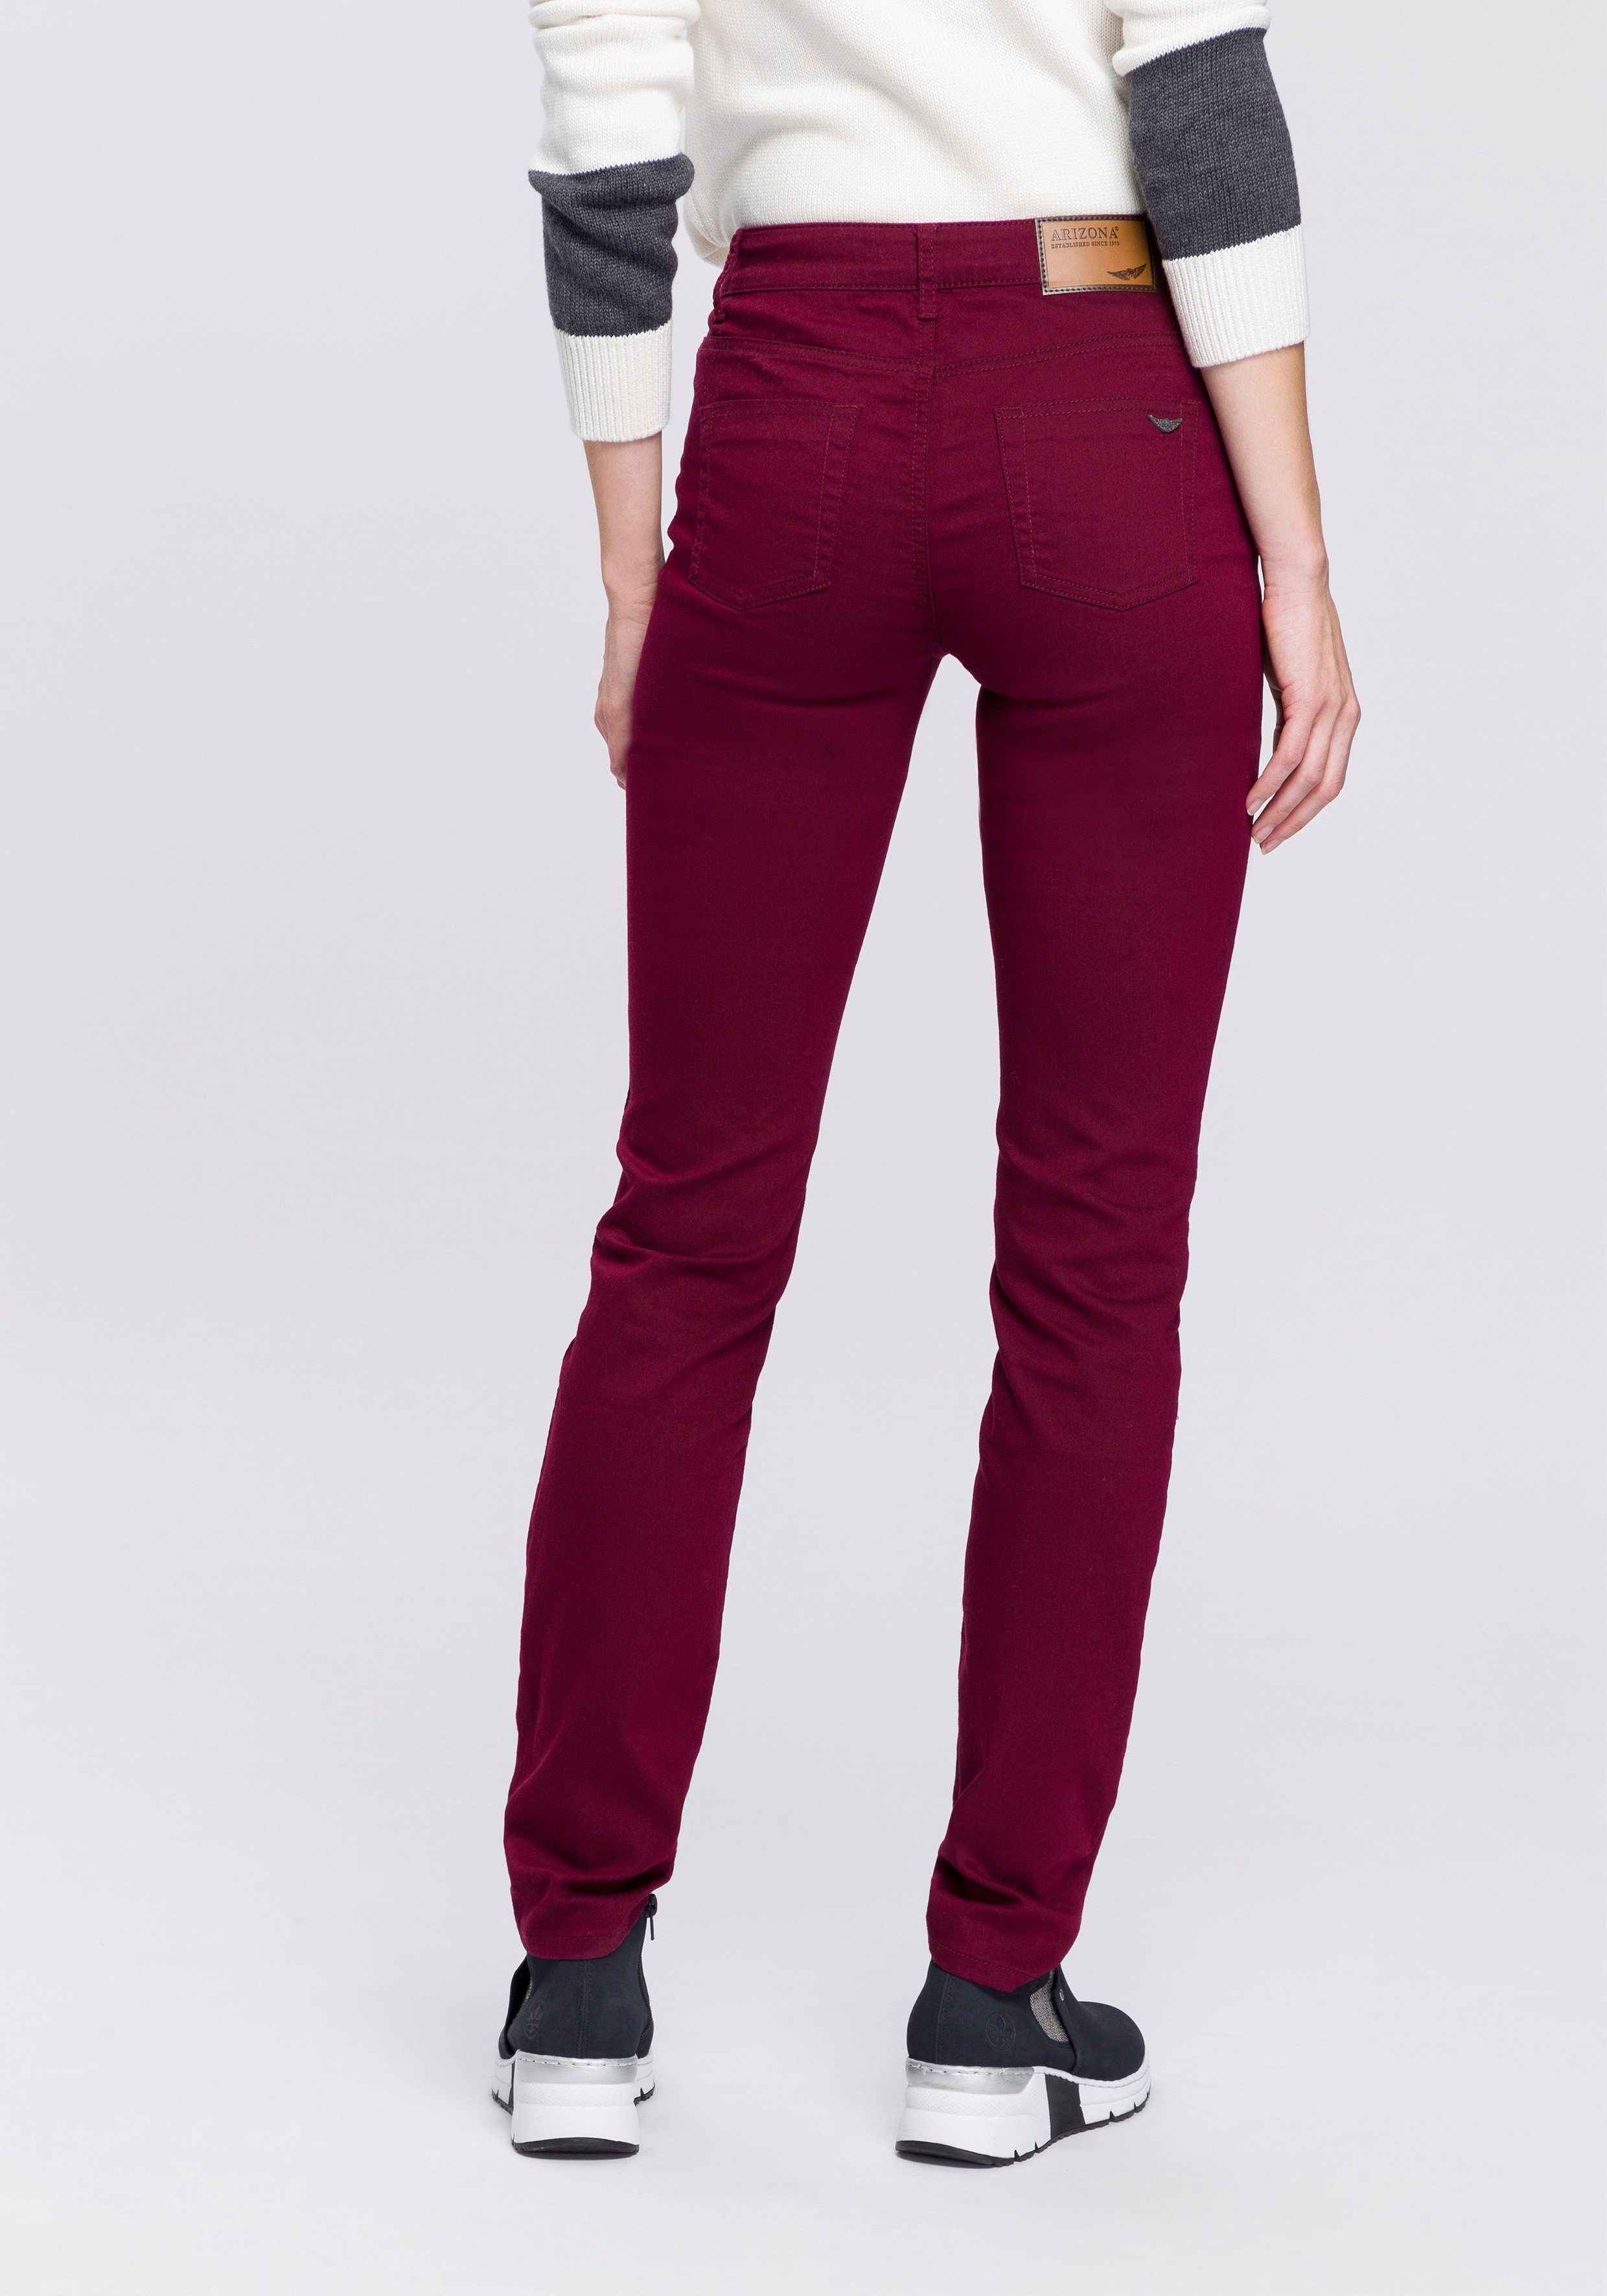 Rote Jeans online kaufen | OTTO